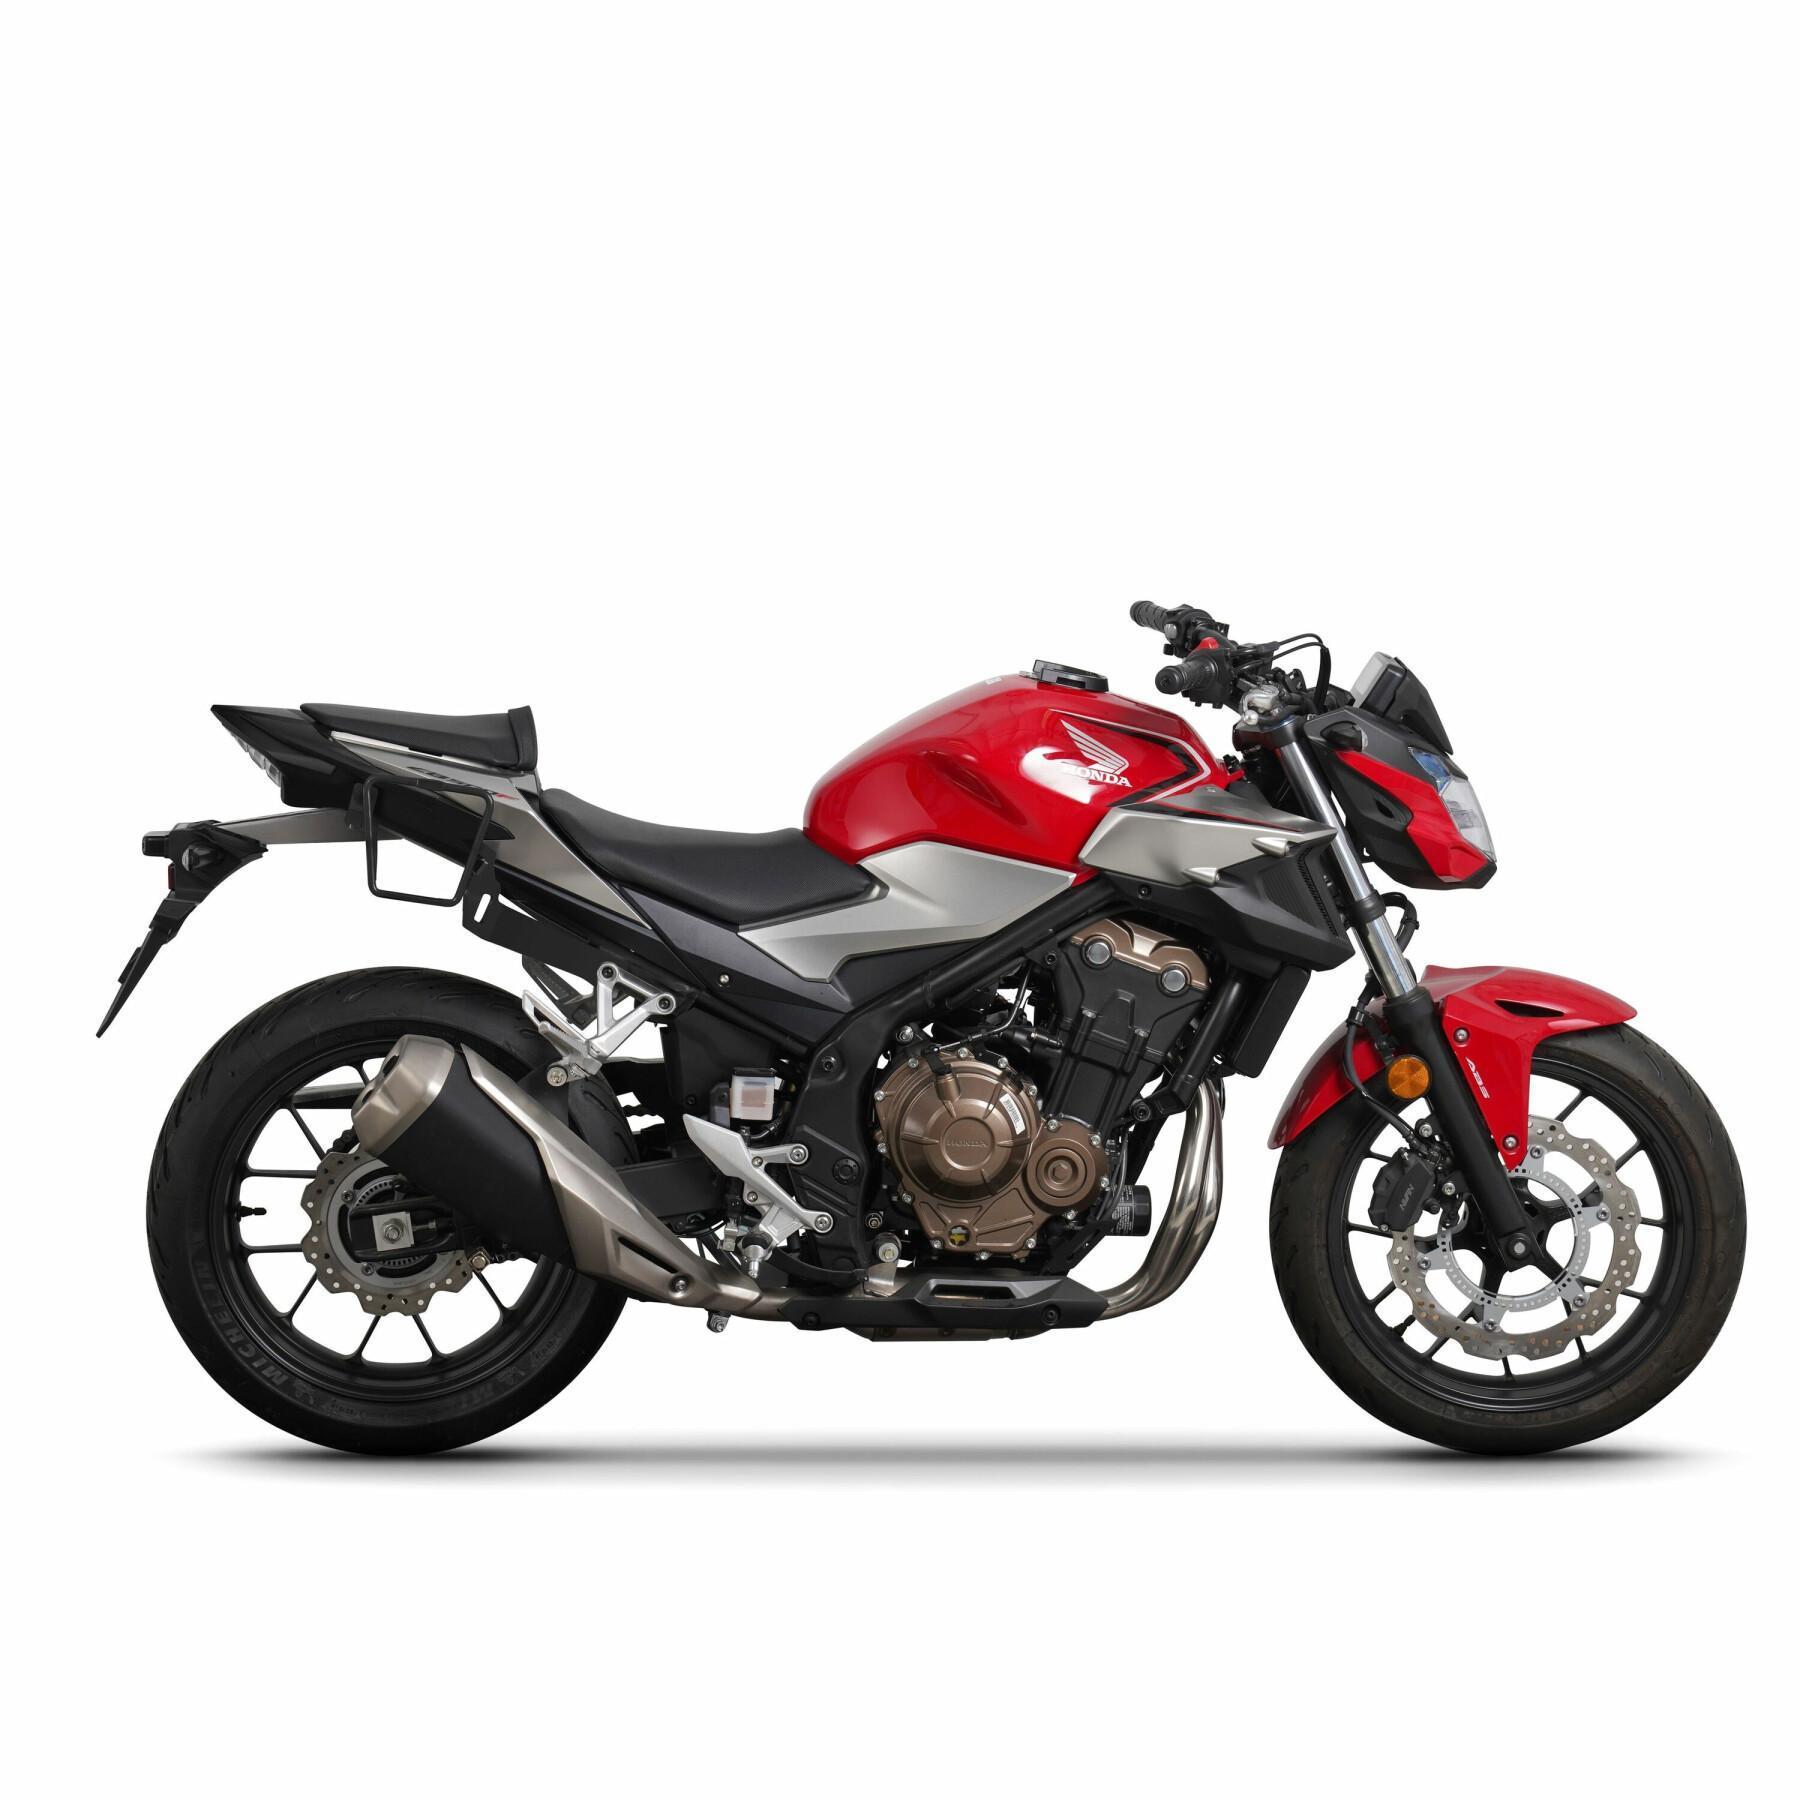 Stöd för montering av sidoväskor på motorcyklar Shad Honda CB500F/CBR500R